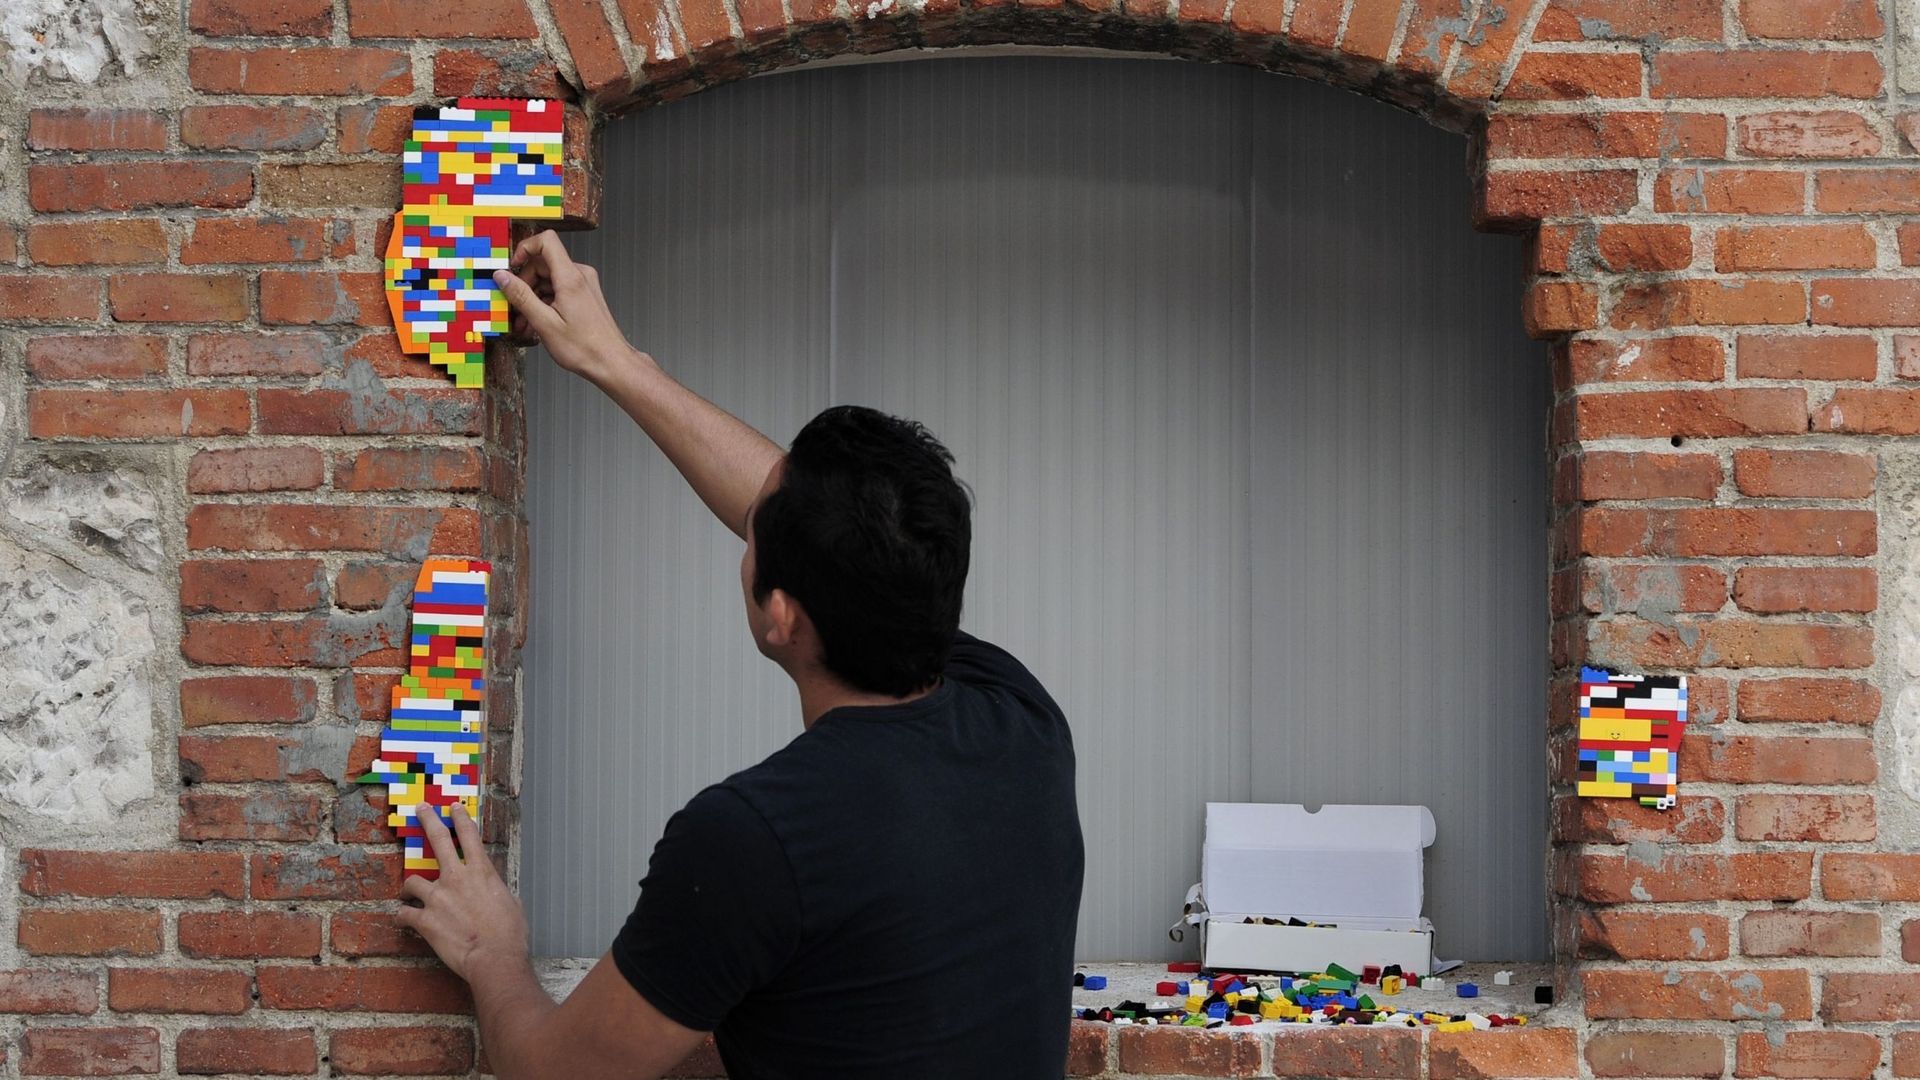 Il "soigne" les bâtiments avec des briques Lego